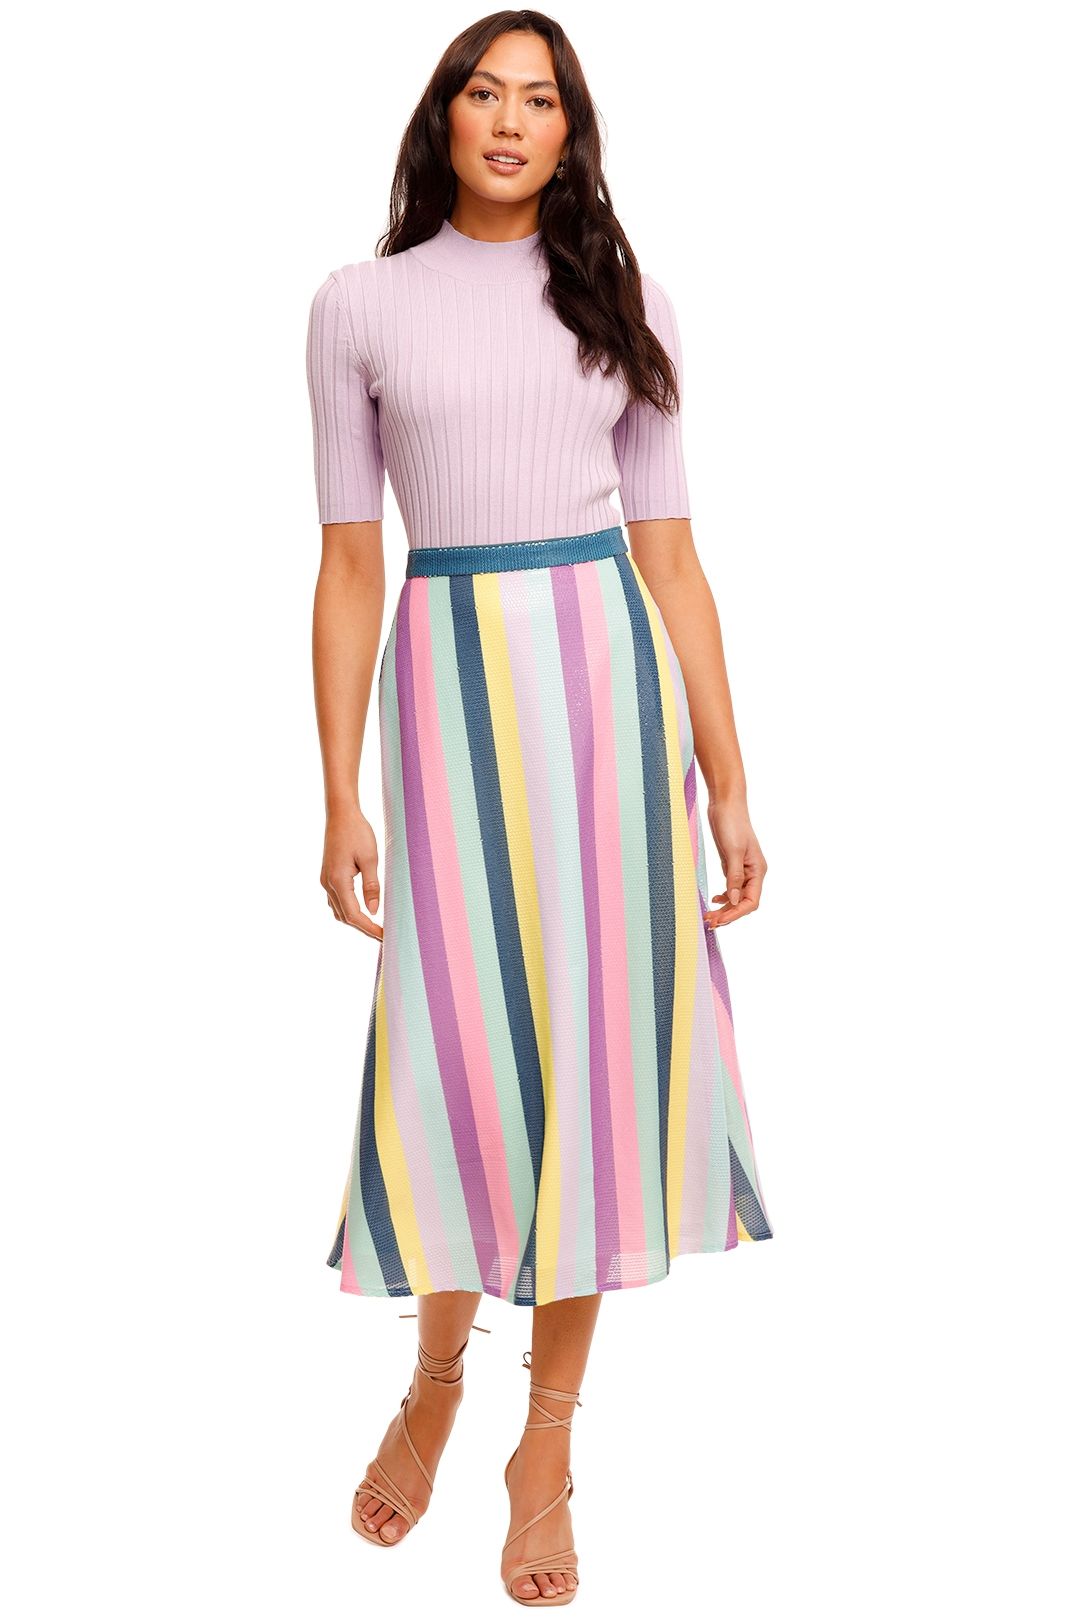 Olivia Rubin Penelope Striped Skirt